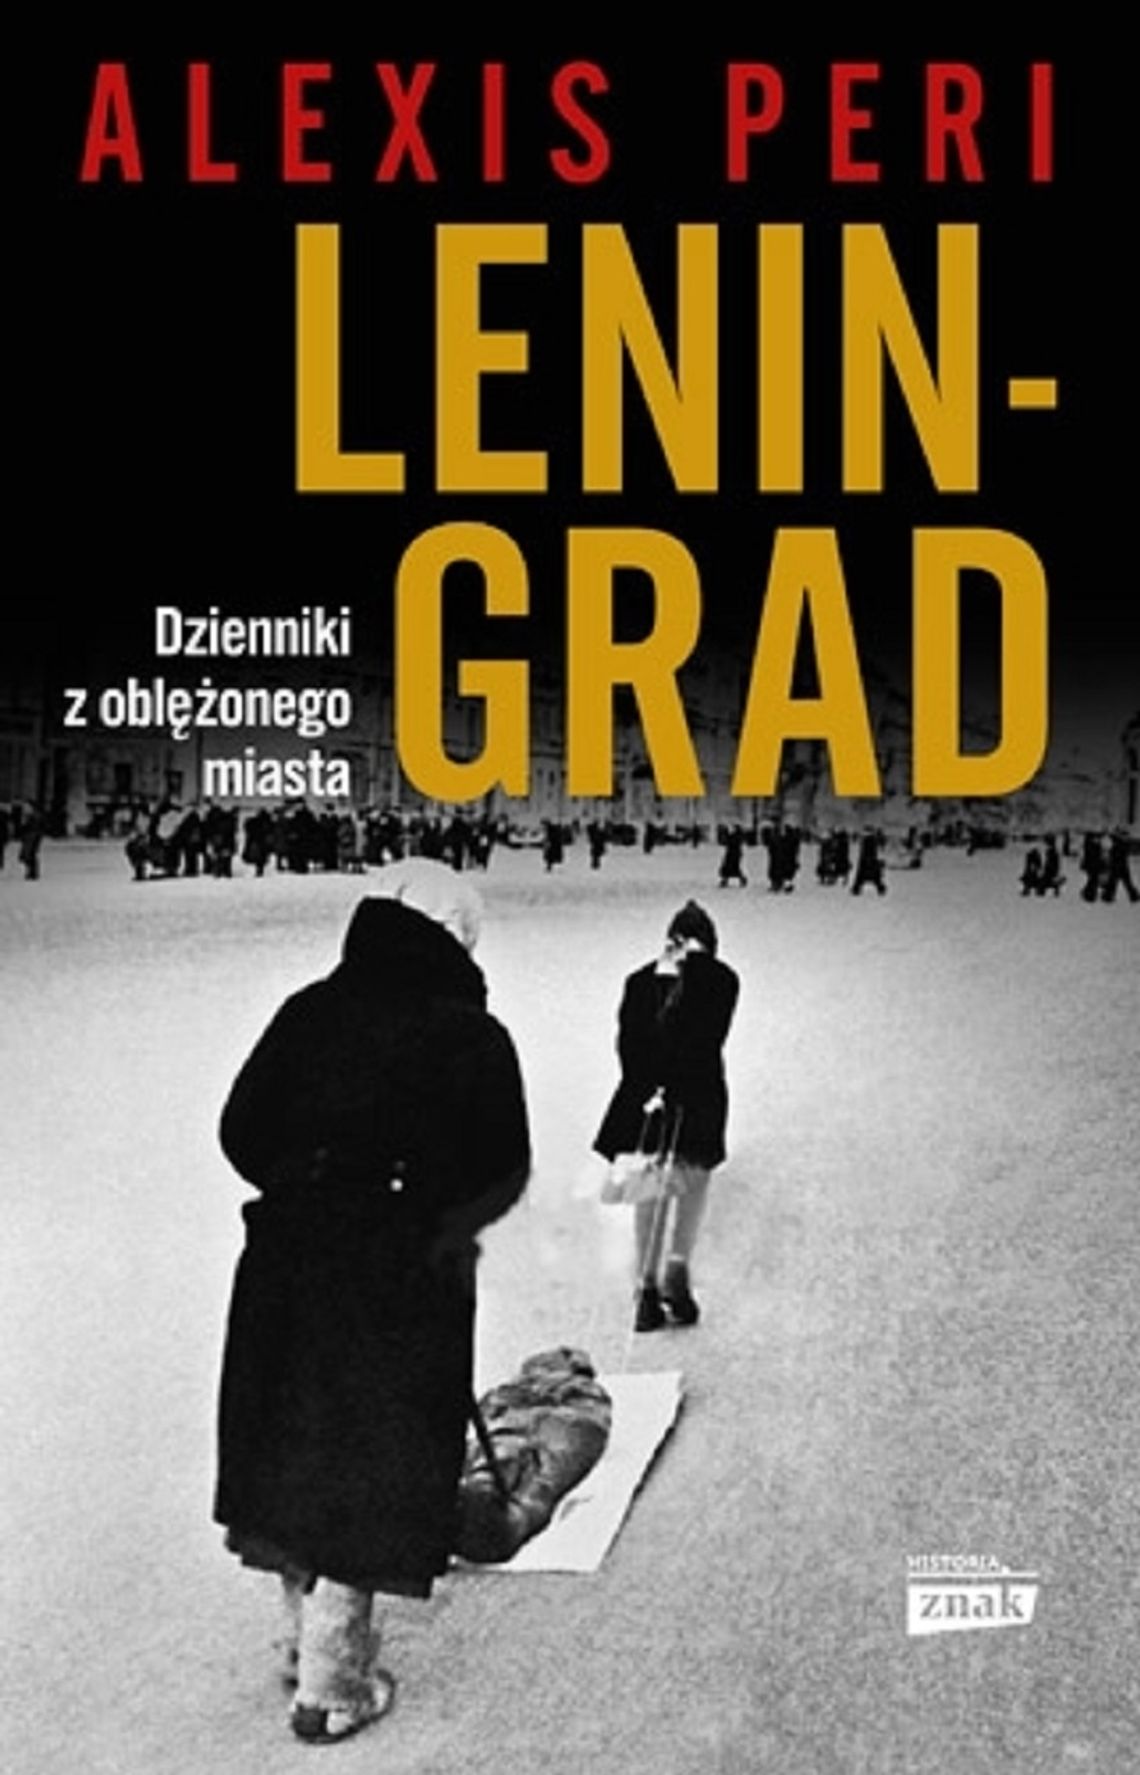 Alexis Peri "Leningrad. Dzienniki z oblężonego miasta"; wyd. ZNAK